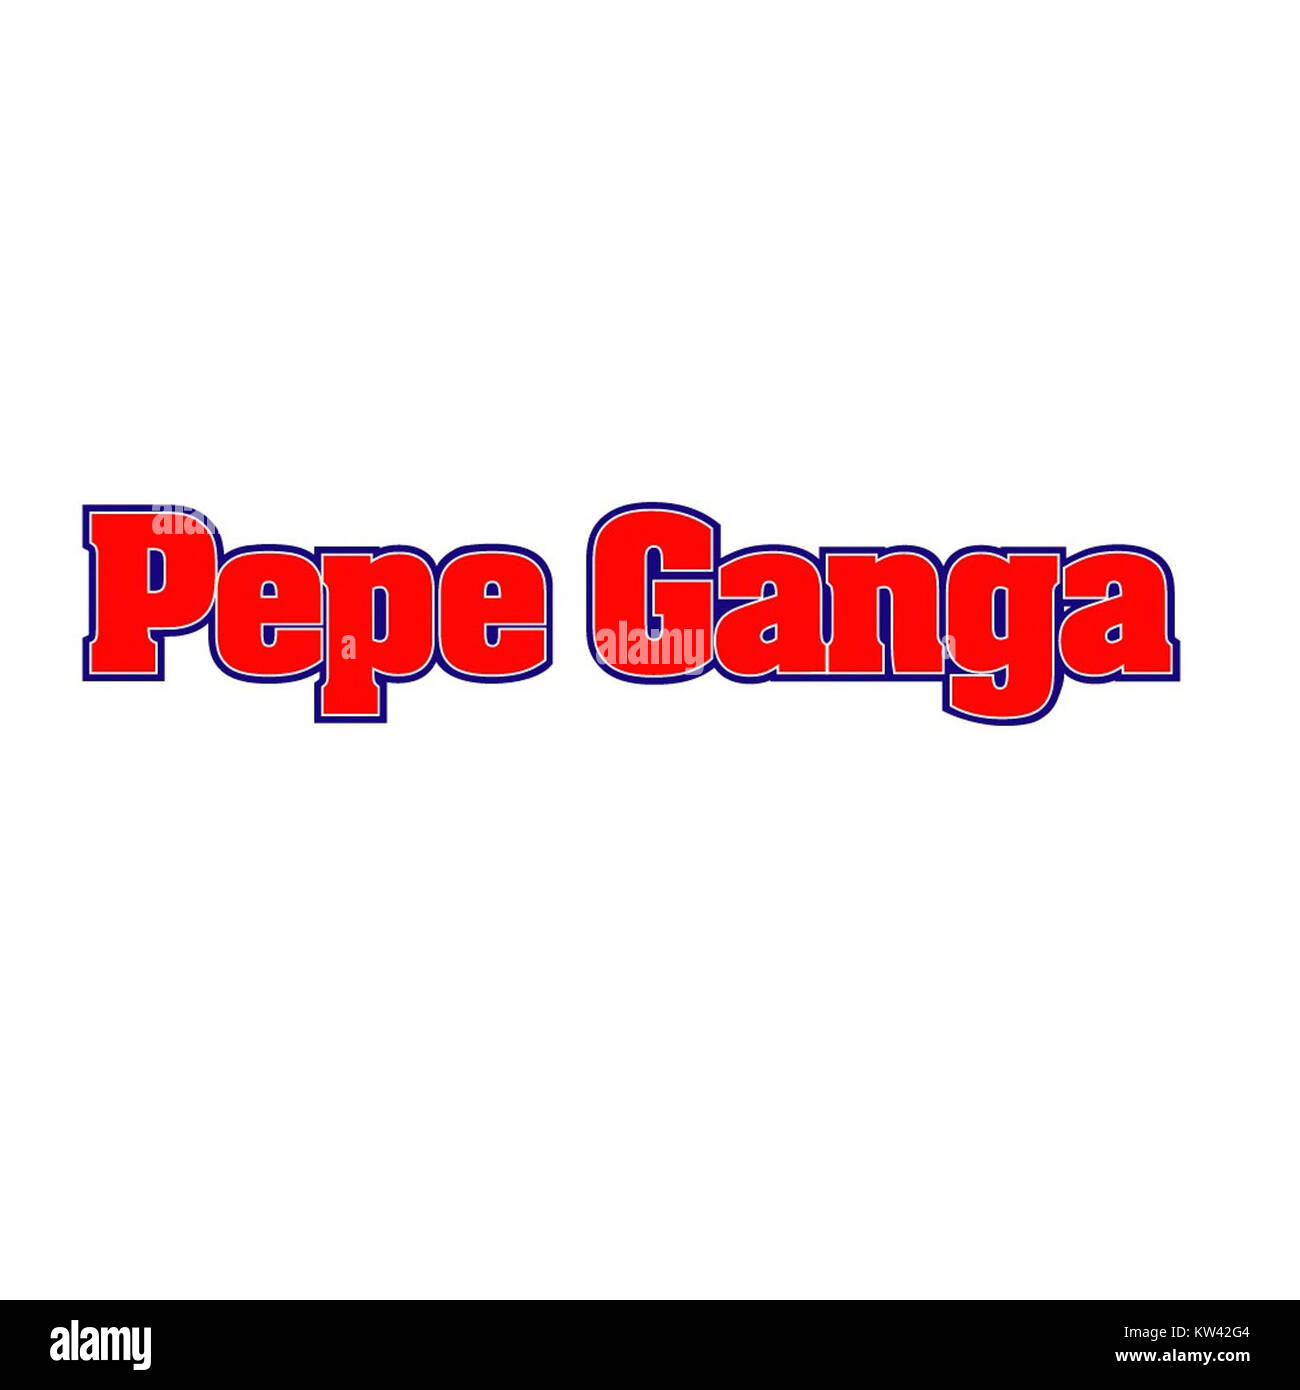 Pepe Ganga - Pepe Ganga added a new photo.